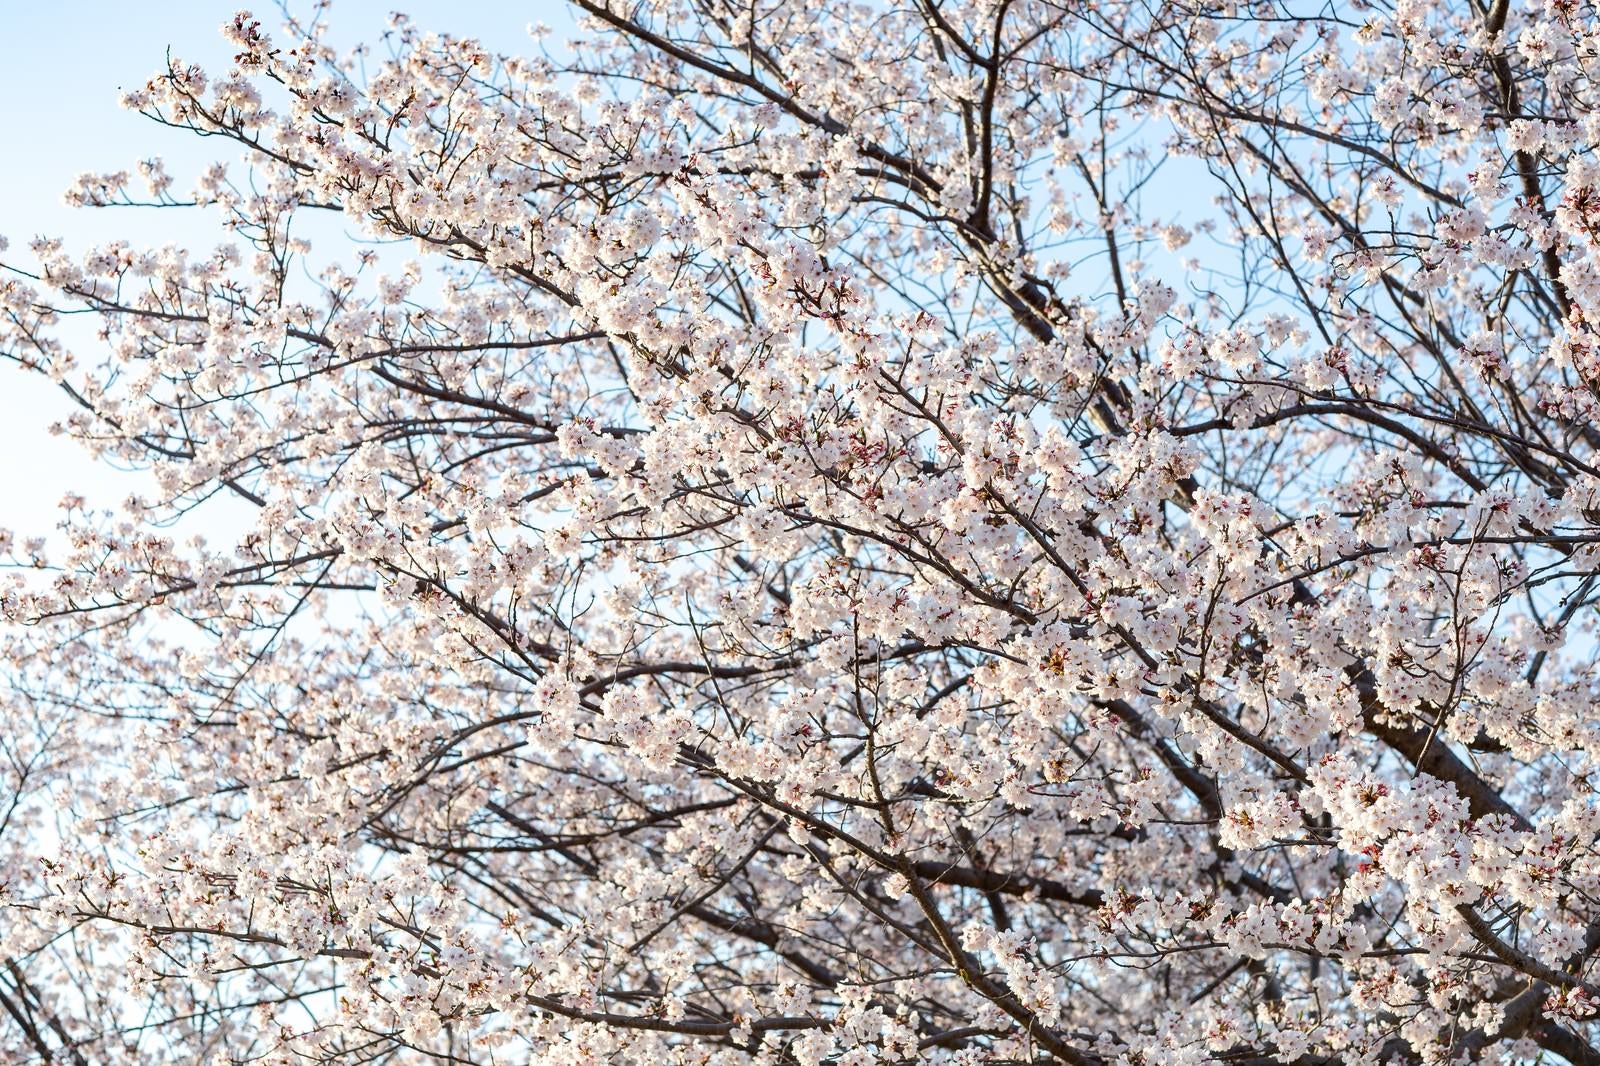 「霞み行く空と桜の木」の写真